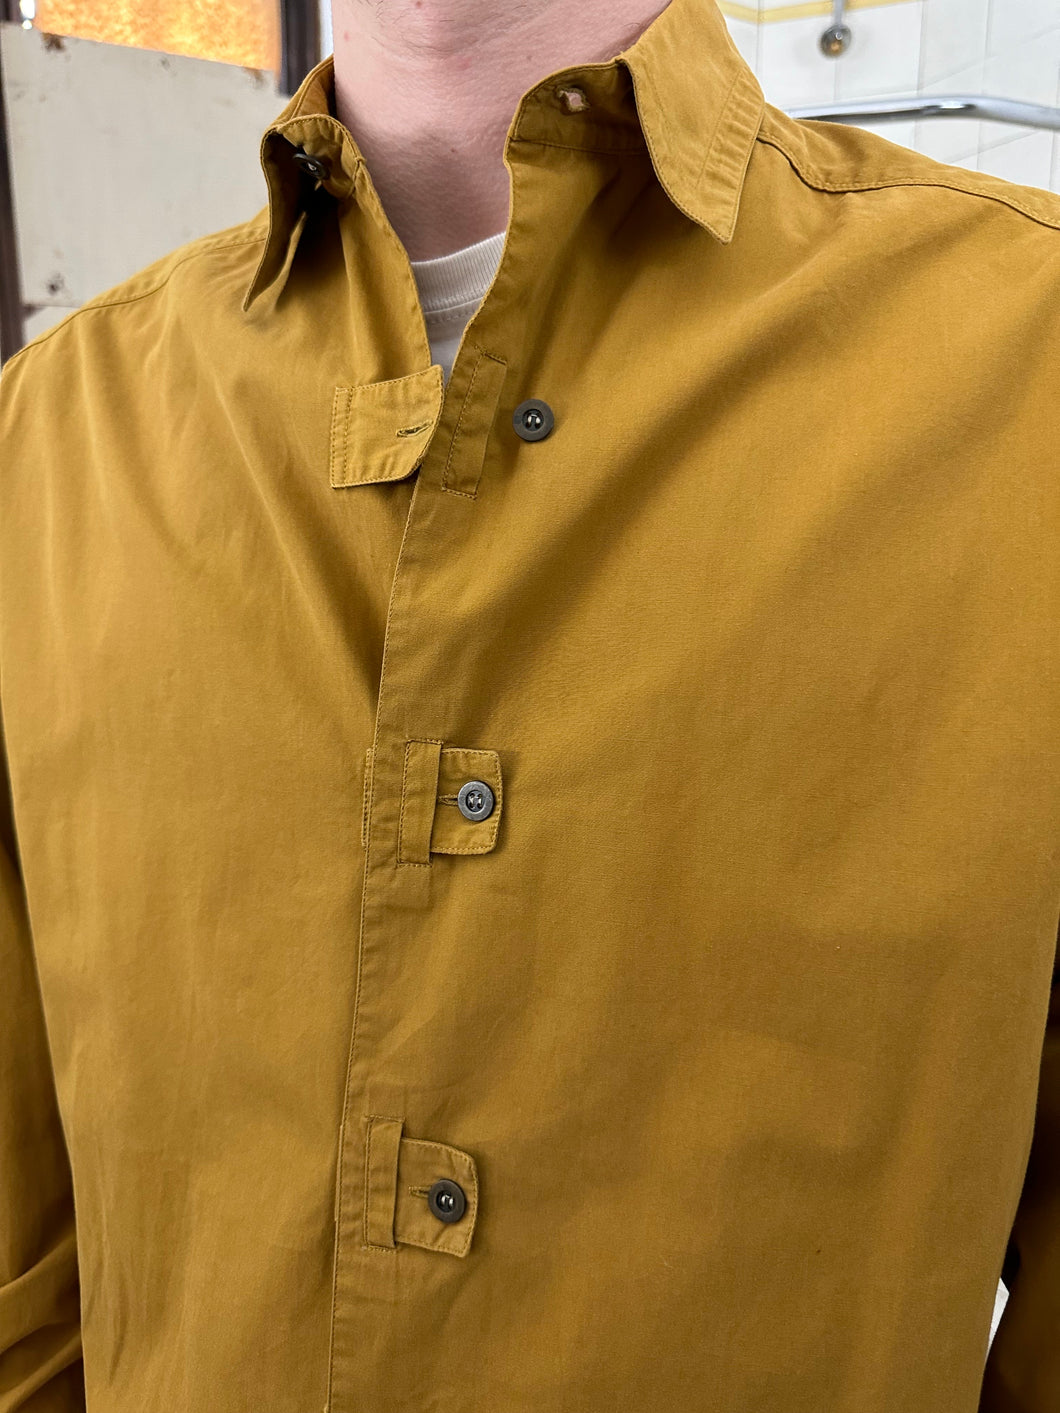 1980s Claude Montana Cutout Placket Closure Button Up Shirt - Size L